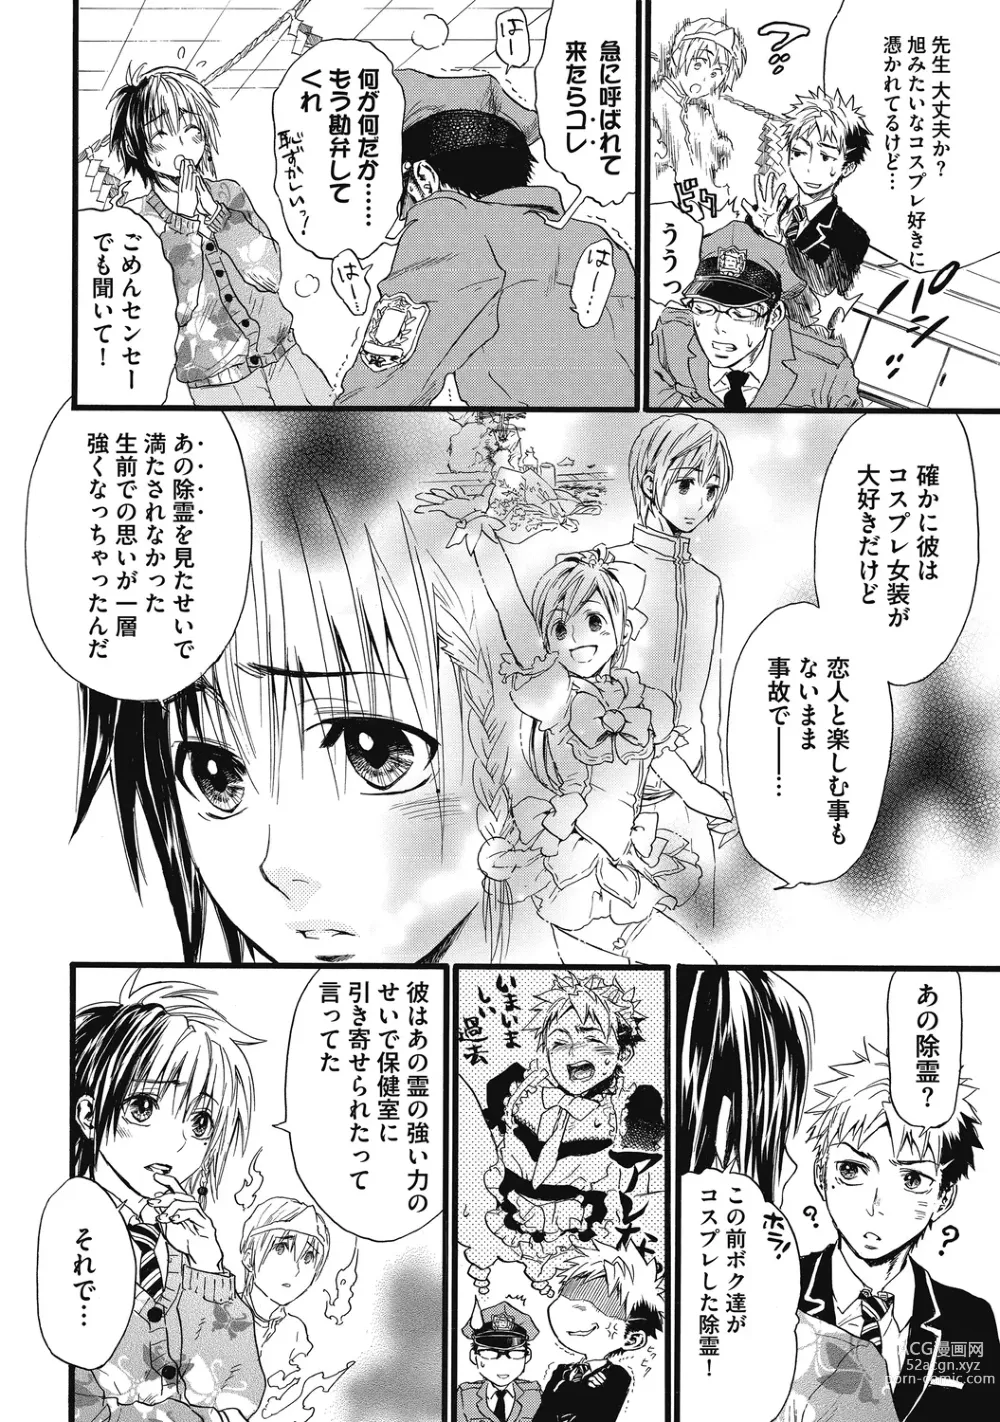 Page 186 of manga Mashounen